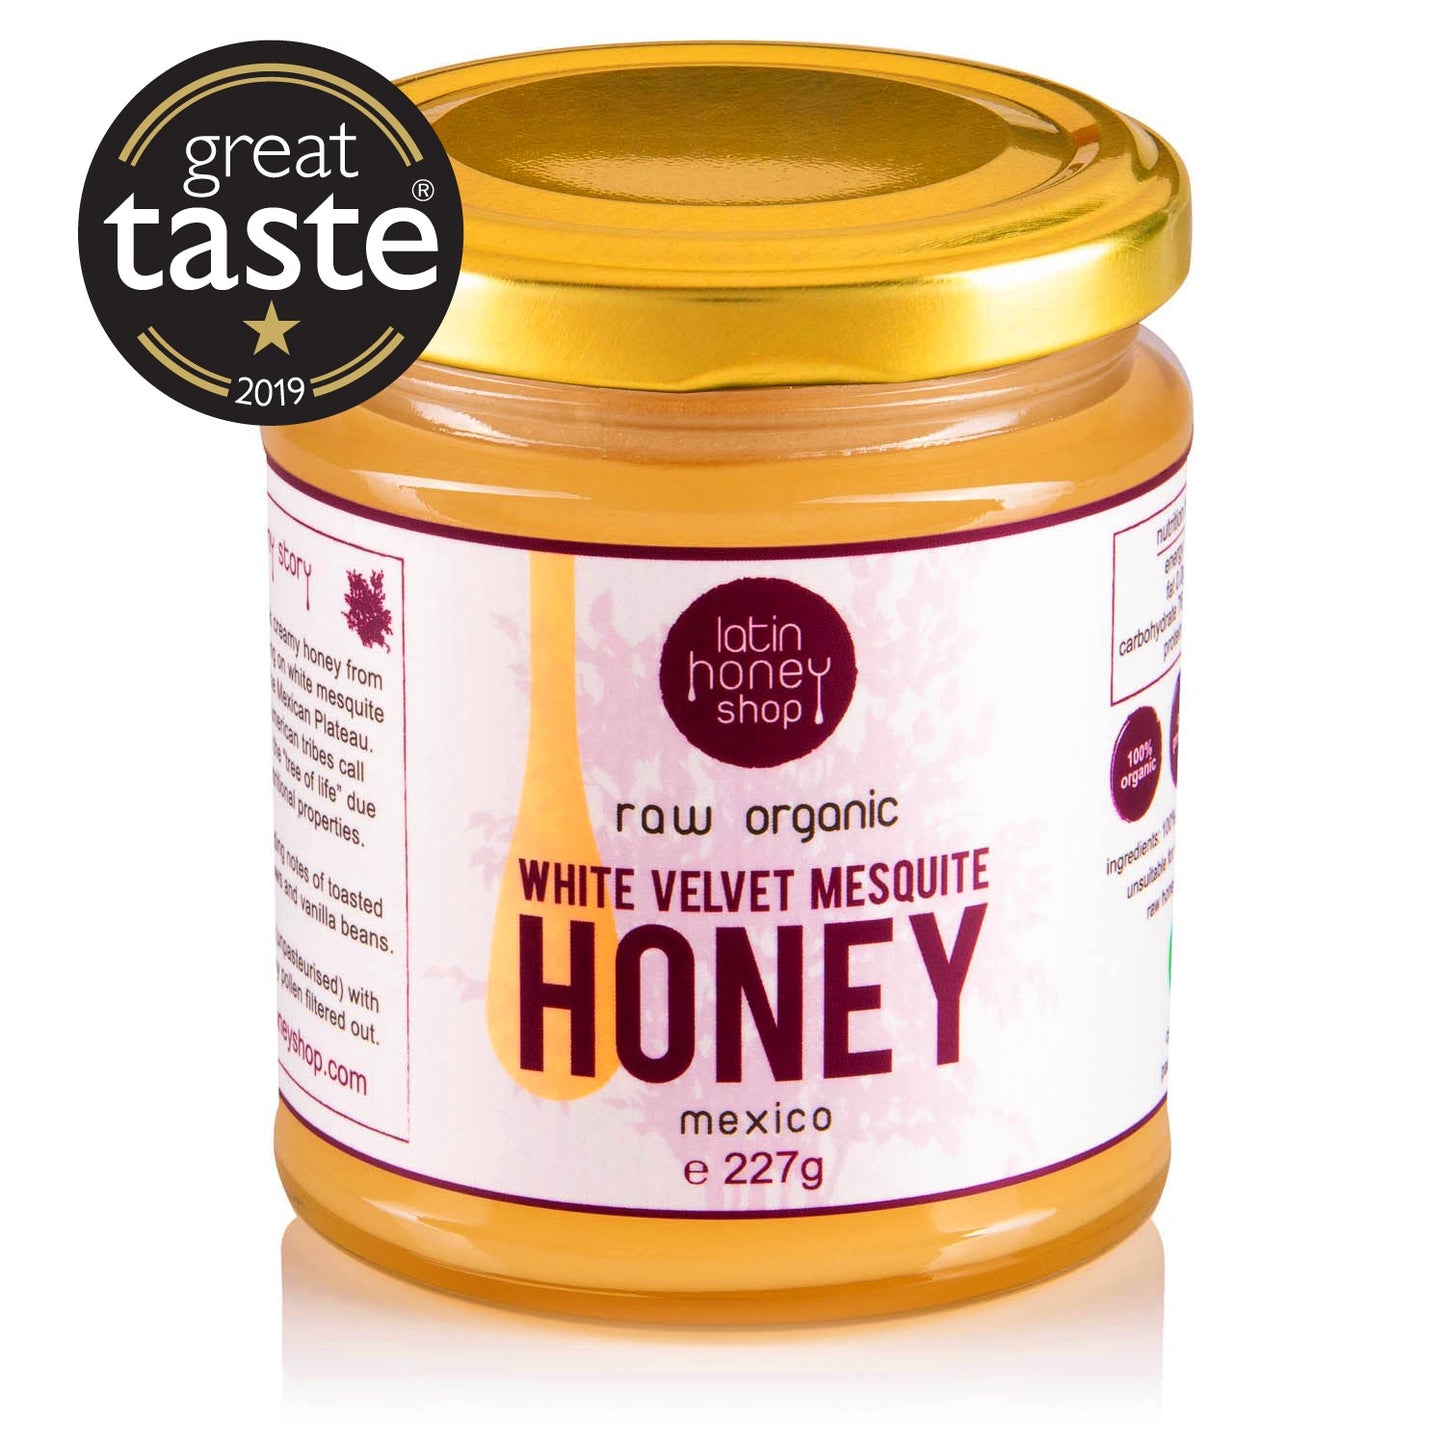 Latin honning shop rå økologisk hvid fløjl mesquite honning fra mexico